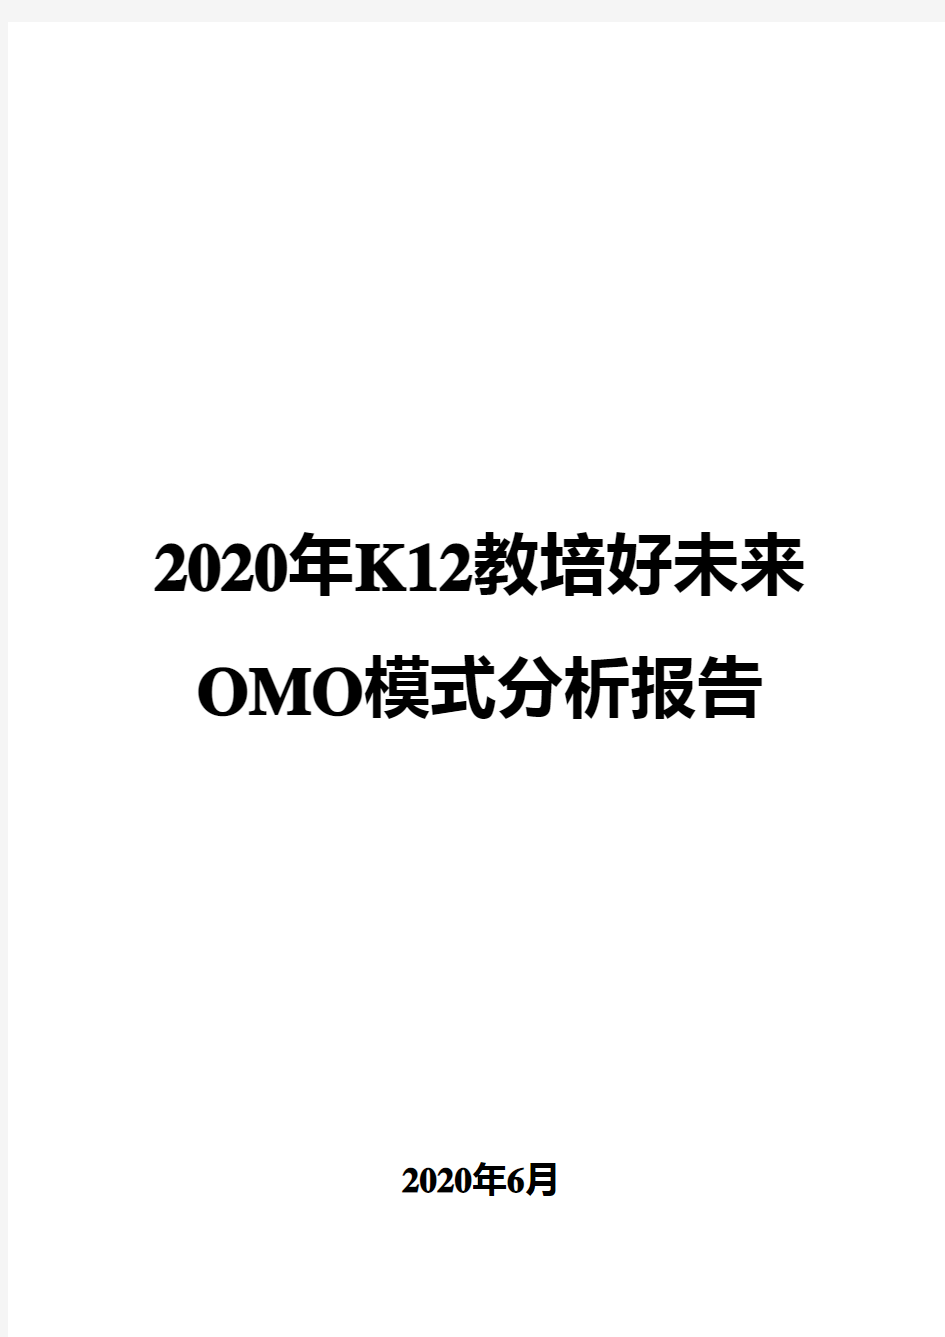 2020年K12教培好未来OMO模式分析报告